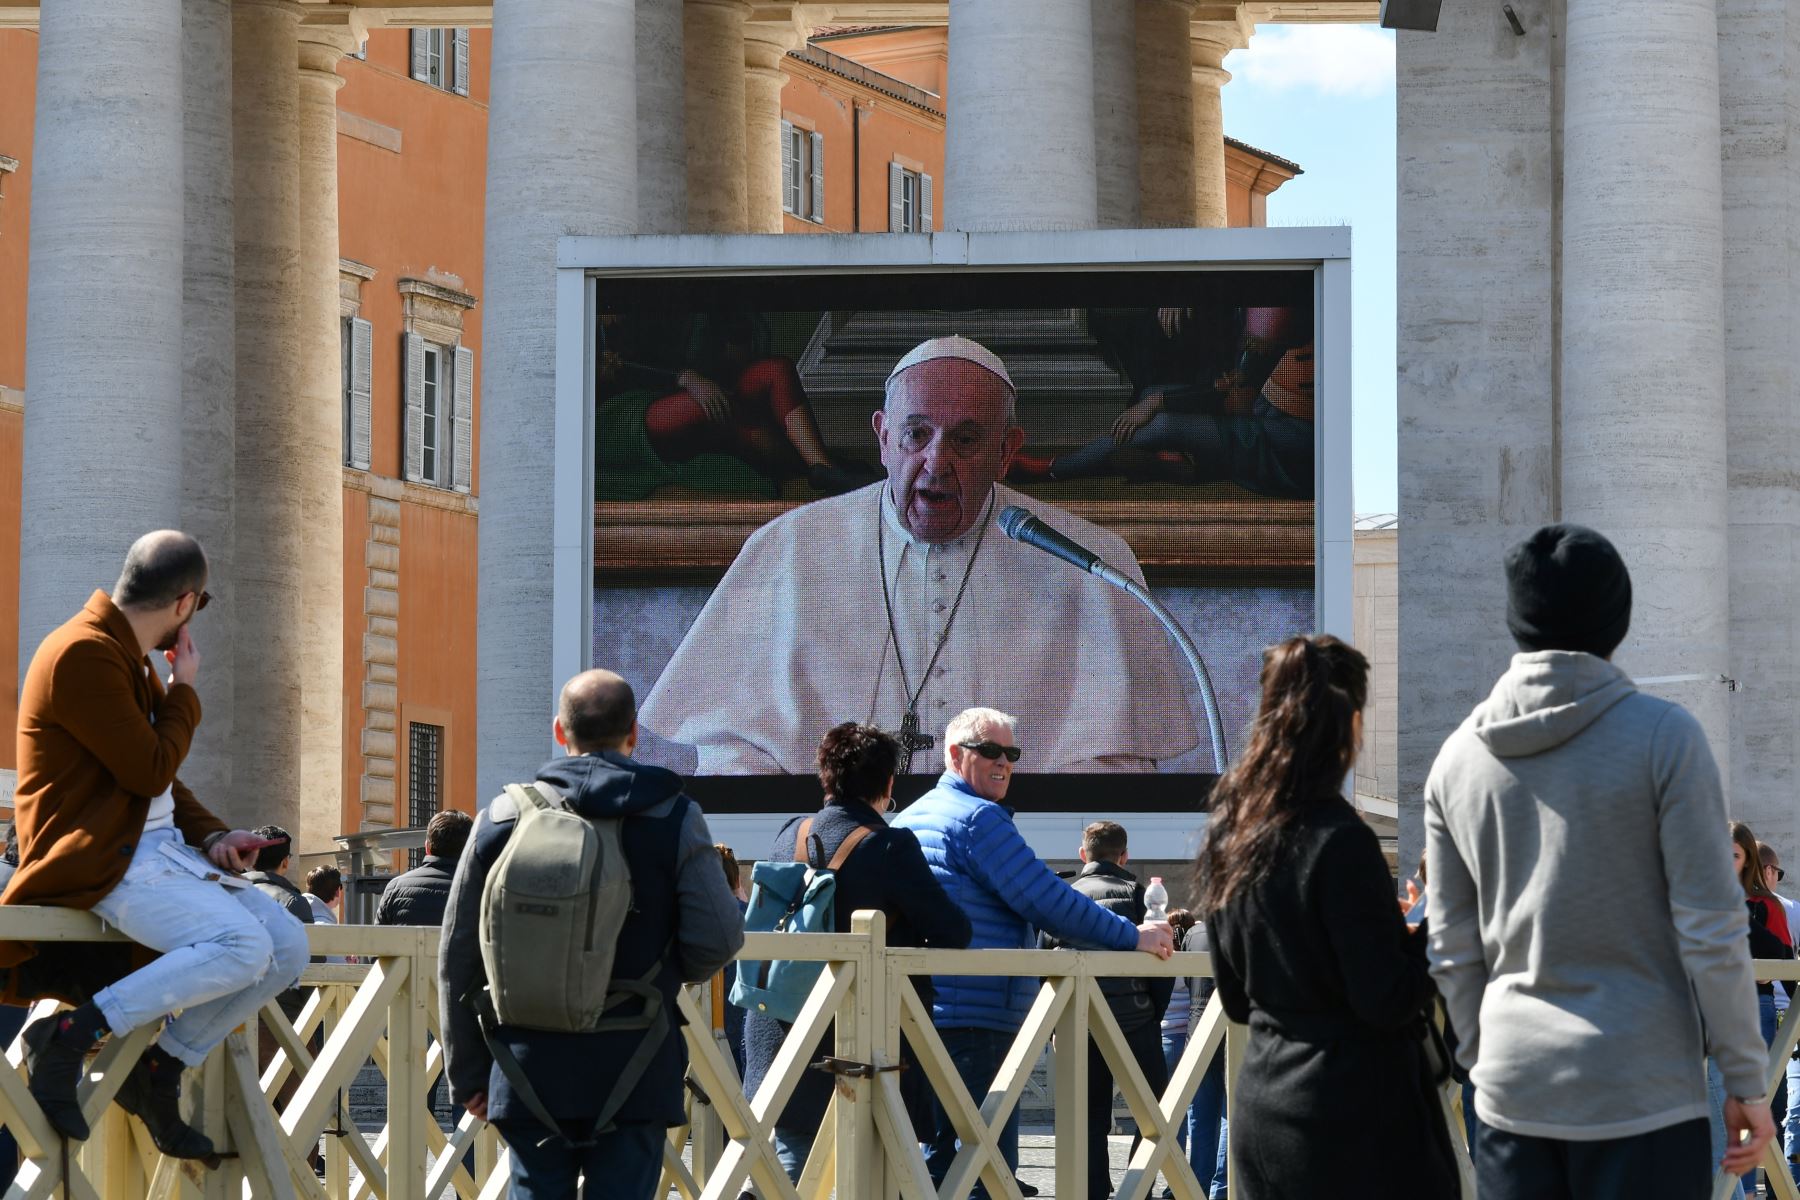 El papa Francisco manifestó este domingo "su cercanía" con los enfermos de coronavirus en su primer rezo dominical por streaming, tras lo cual se asomó a la ventana para impartir la bendición.